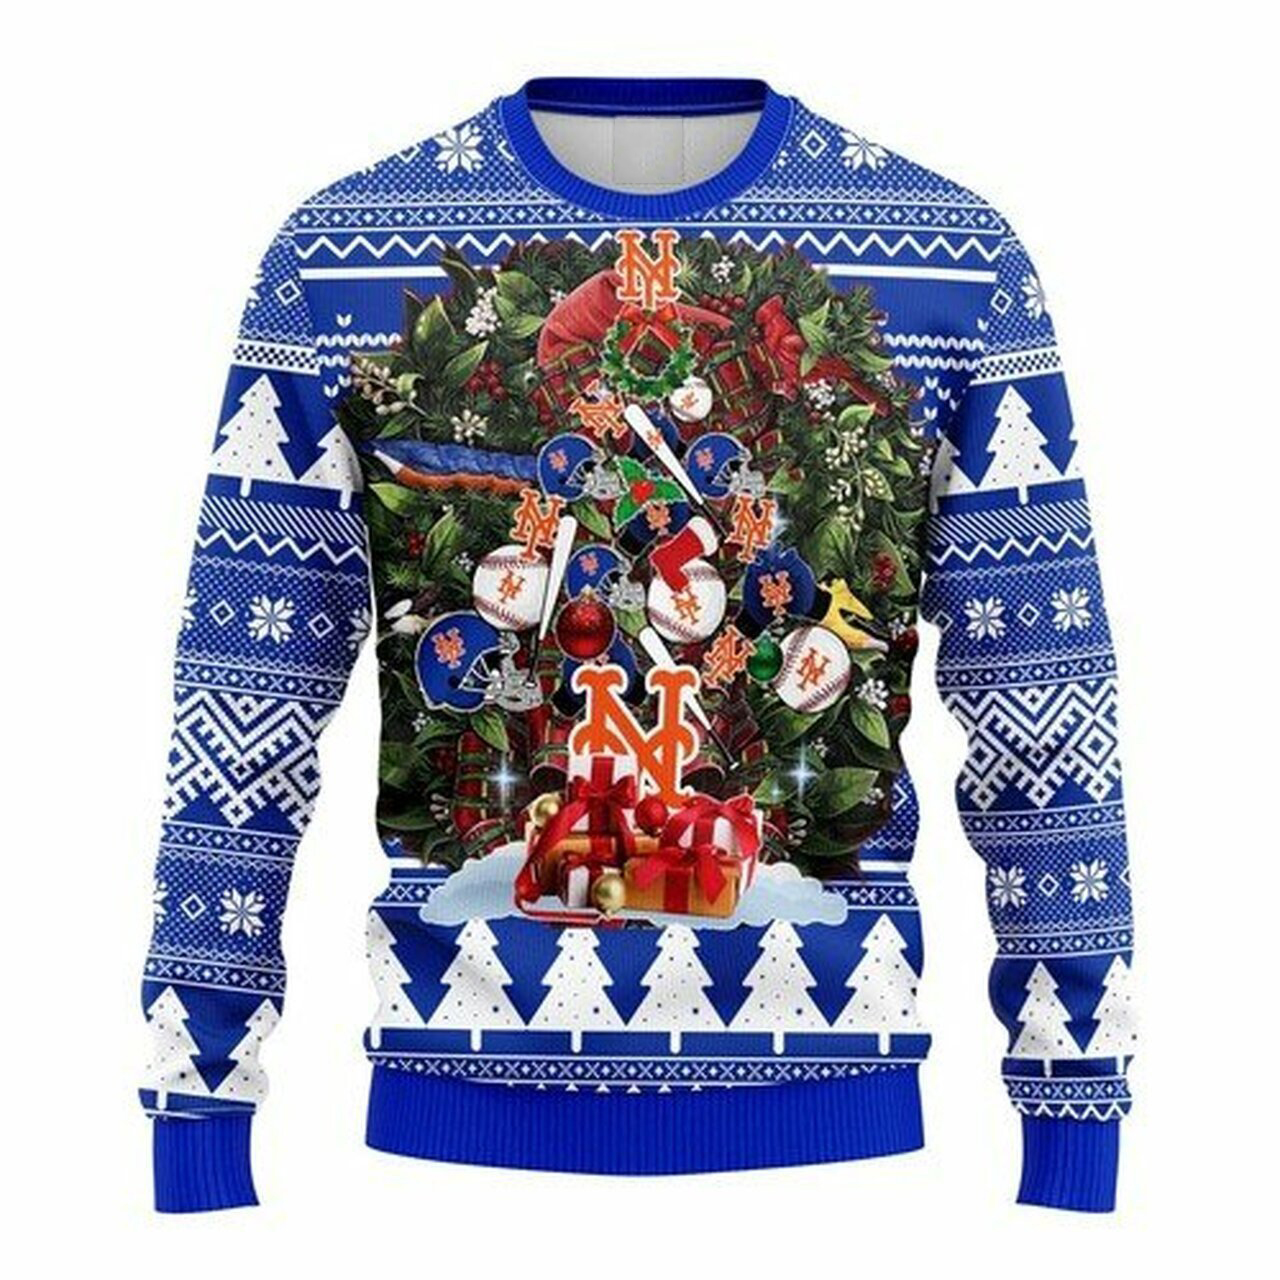 MLB New York Mets christmas tree ugly sweater